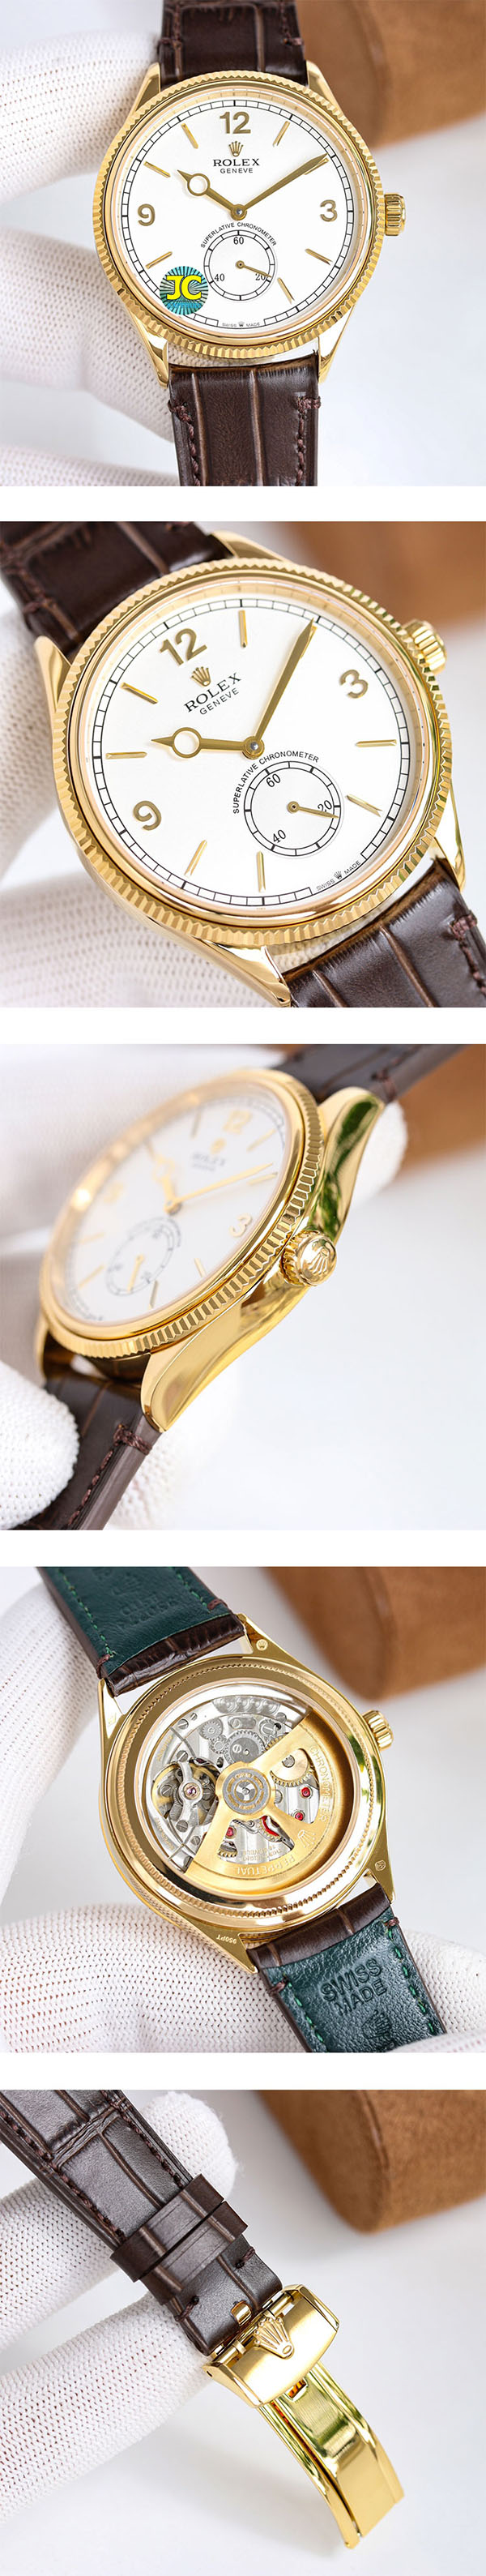 【新登場】ロレックス パーペチュアル1908シリーズ  M52508-0006 メンズ腕時計おすすめ